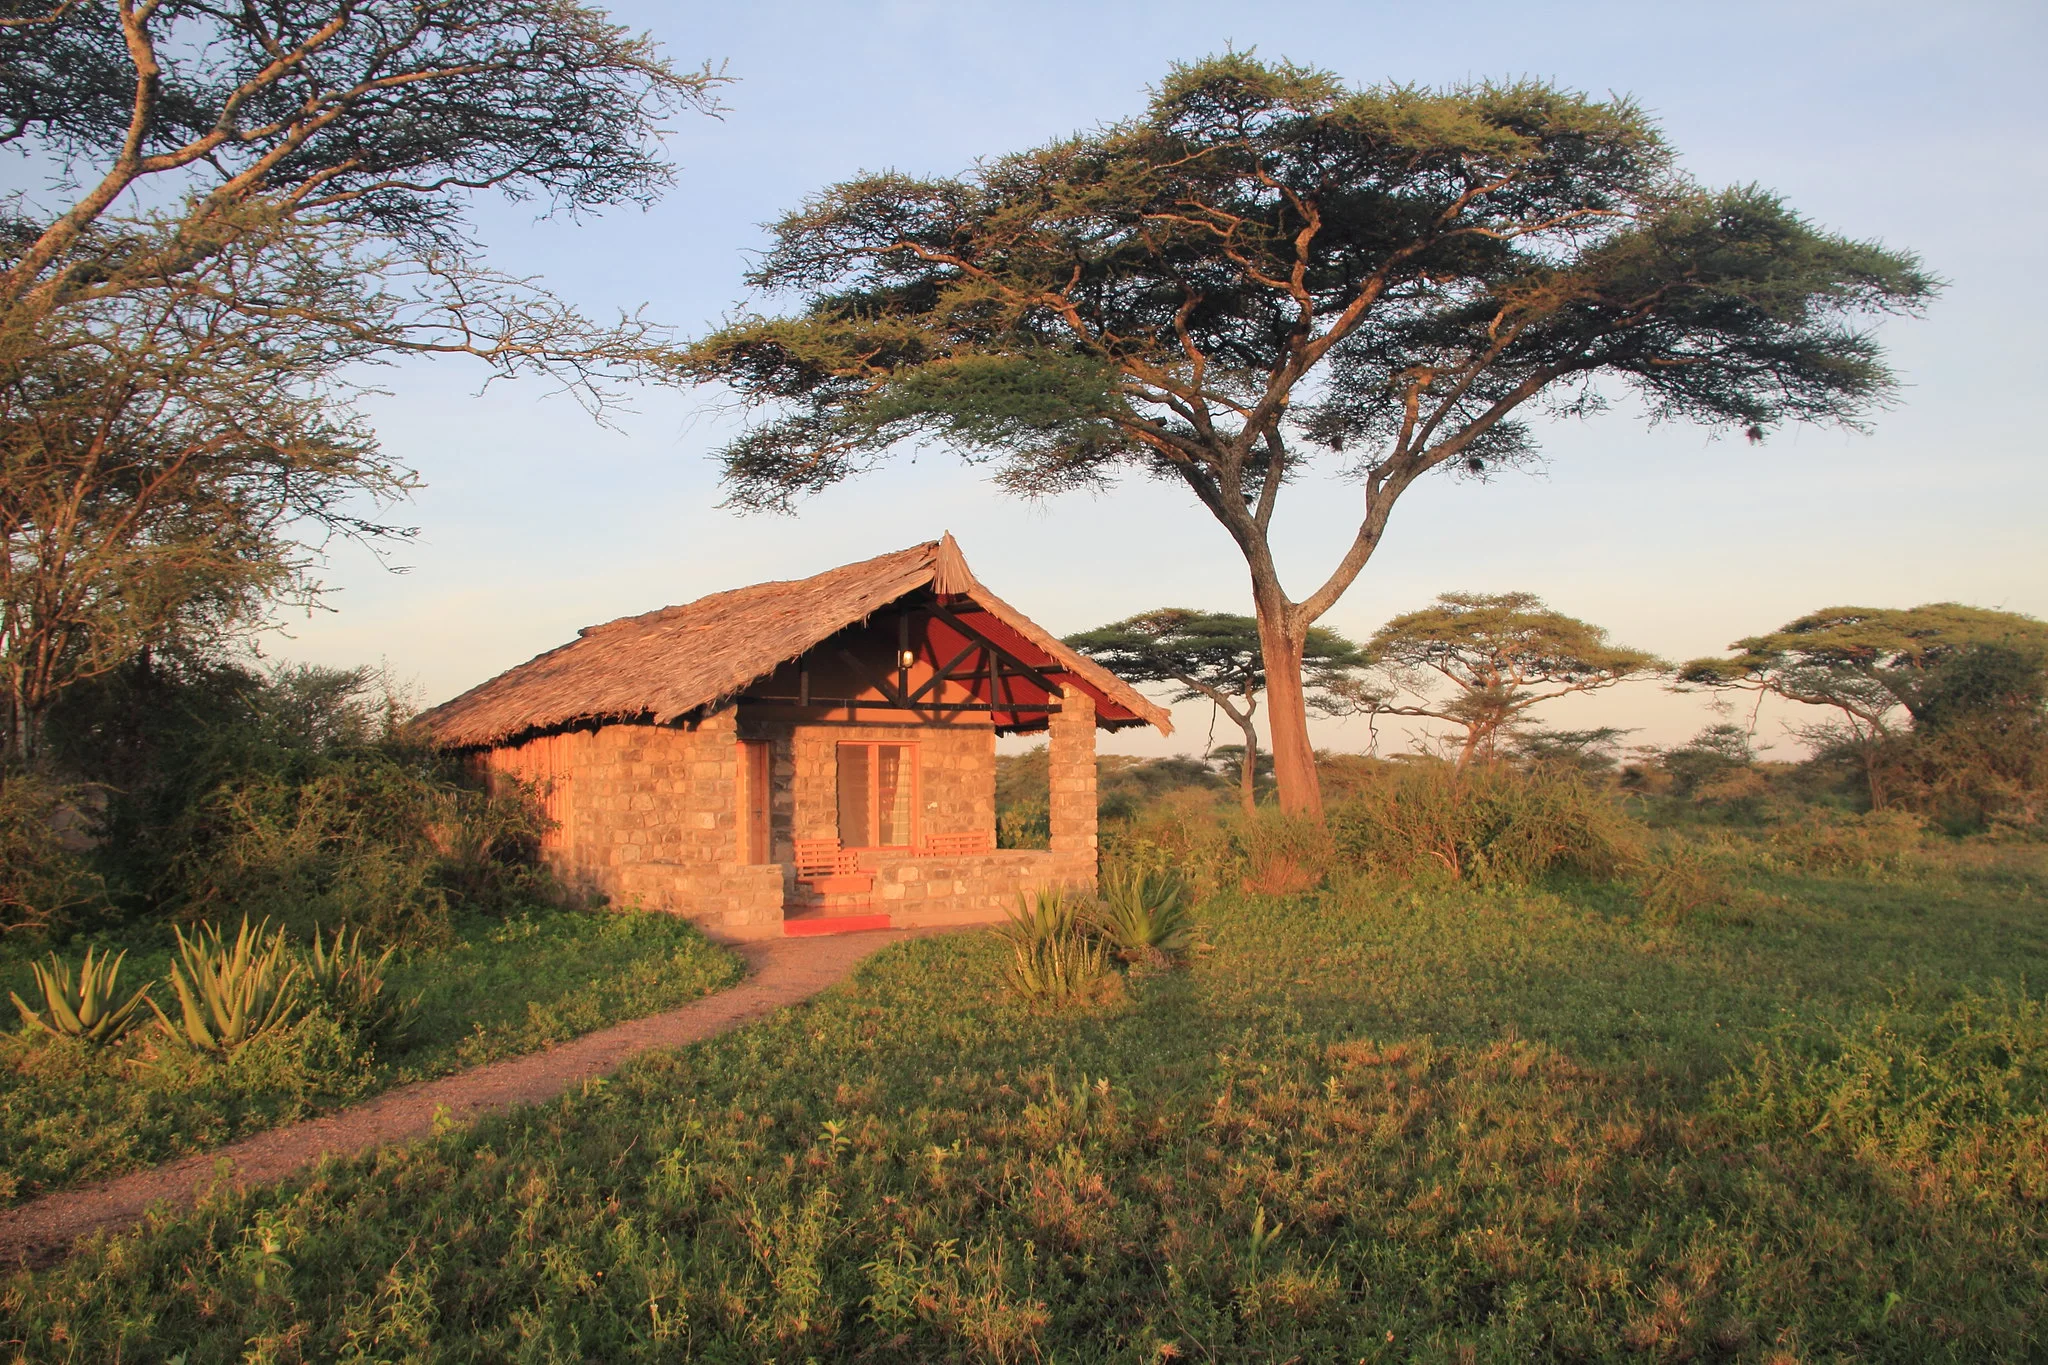 5 Days Tanzania Lodge Safari